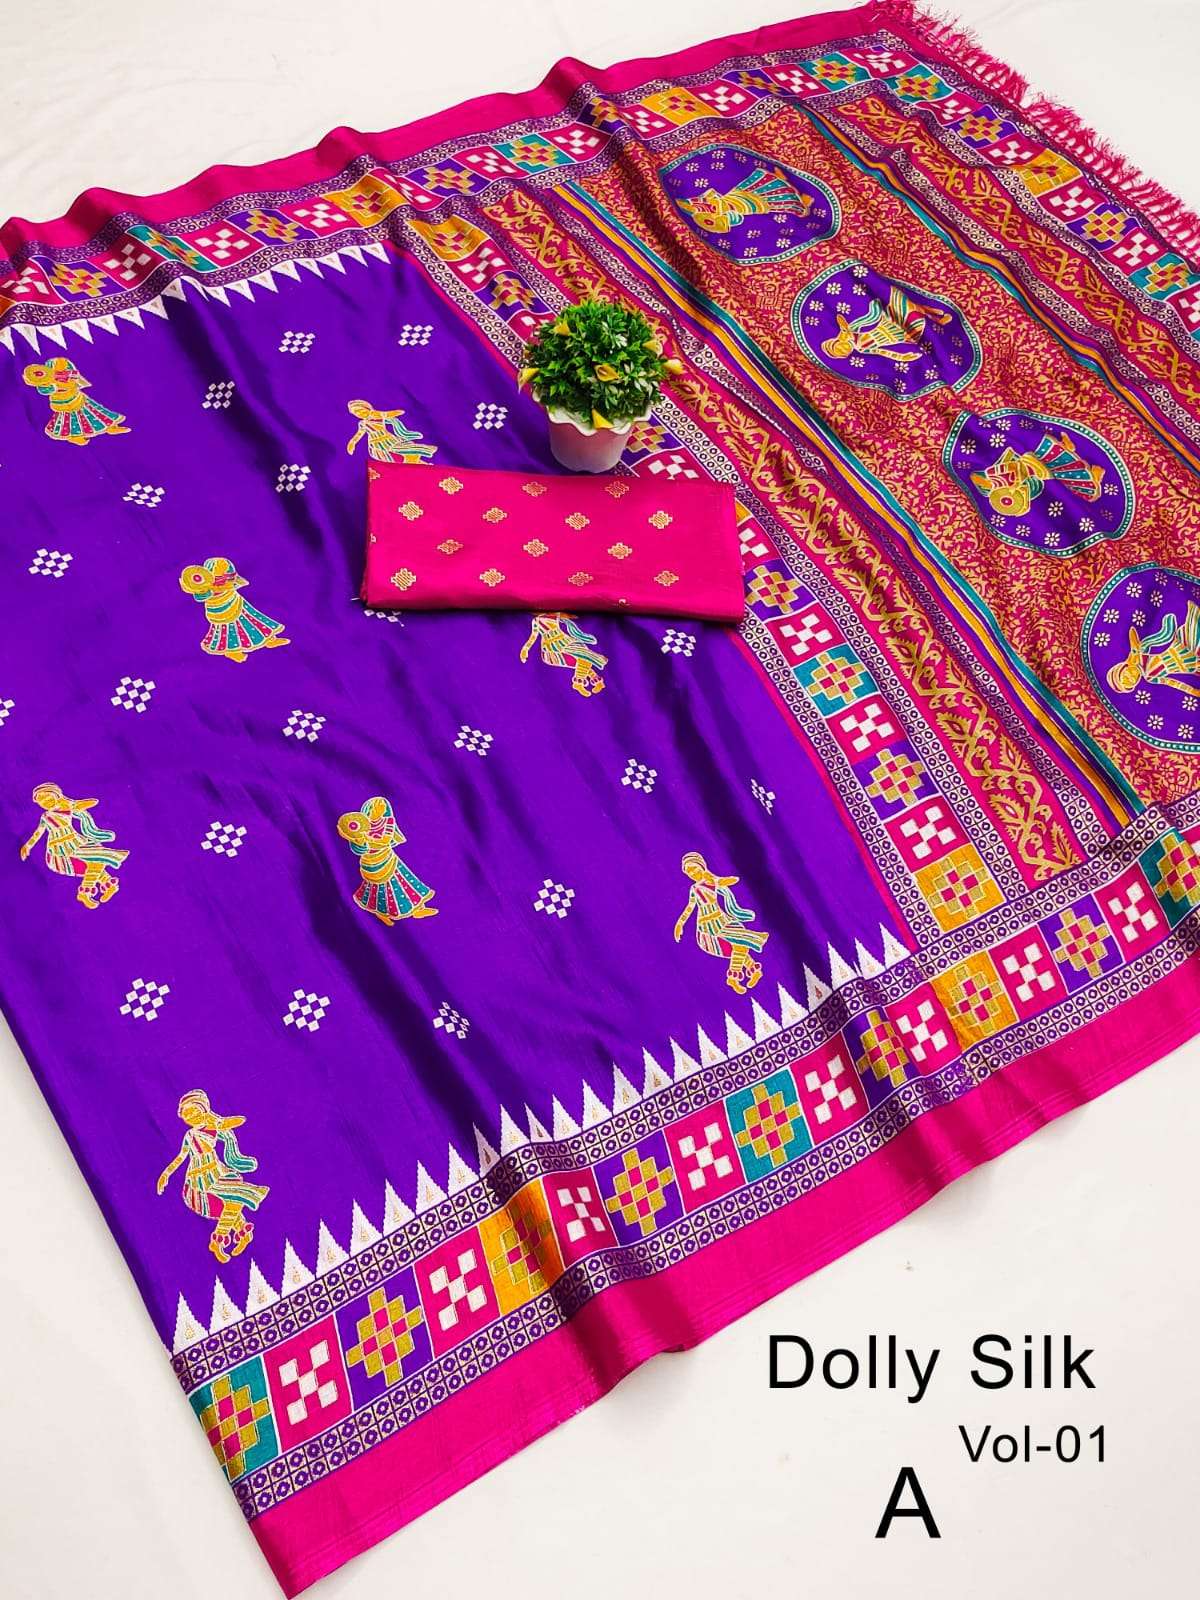 Sangini vol 18 Dola Silk with kalamkari printed saree collec...